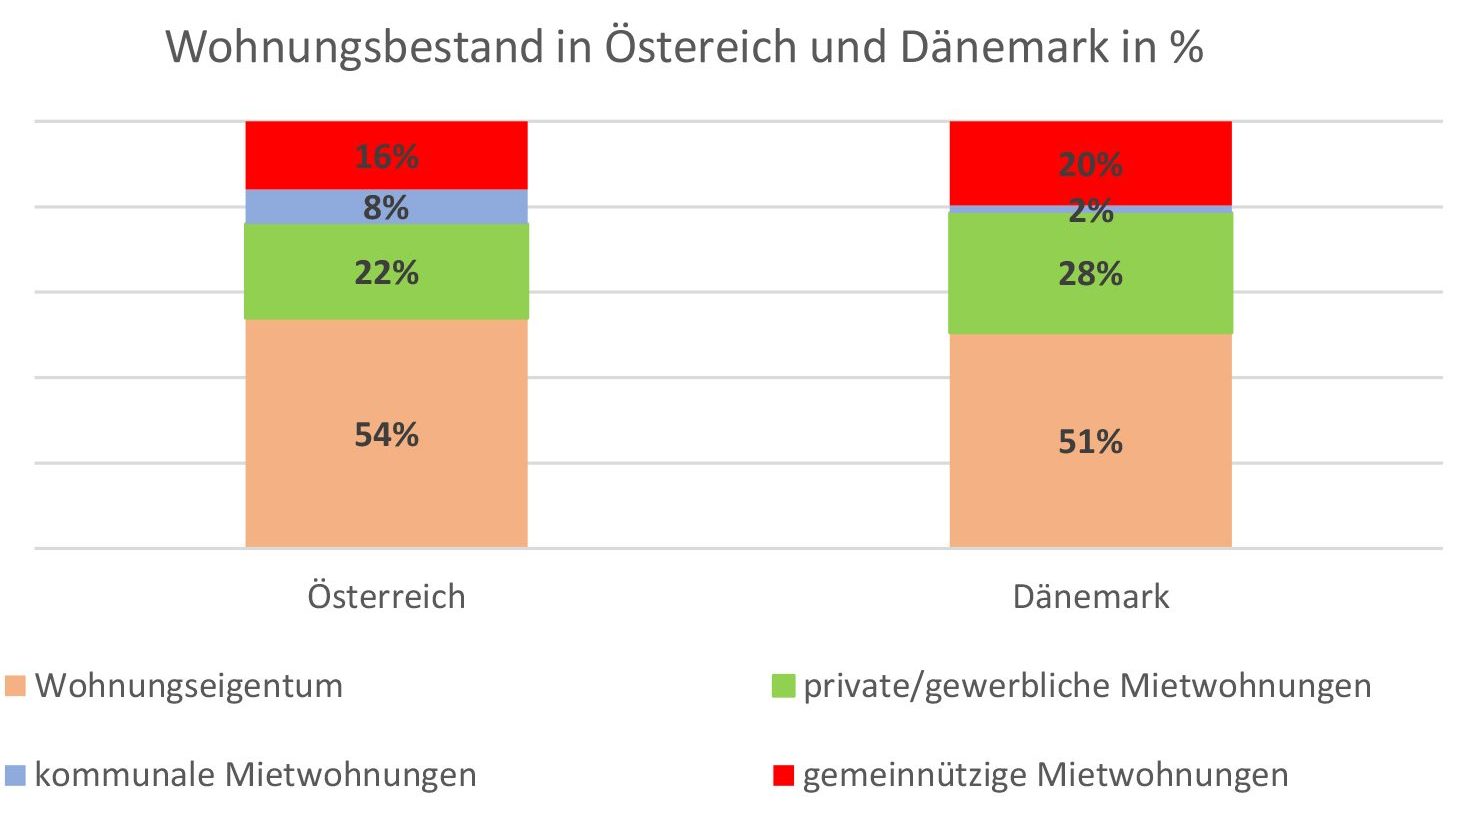 Wohnungsbestand in Östereich und Dänemark in %